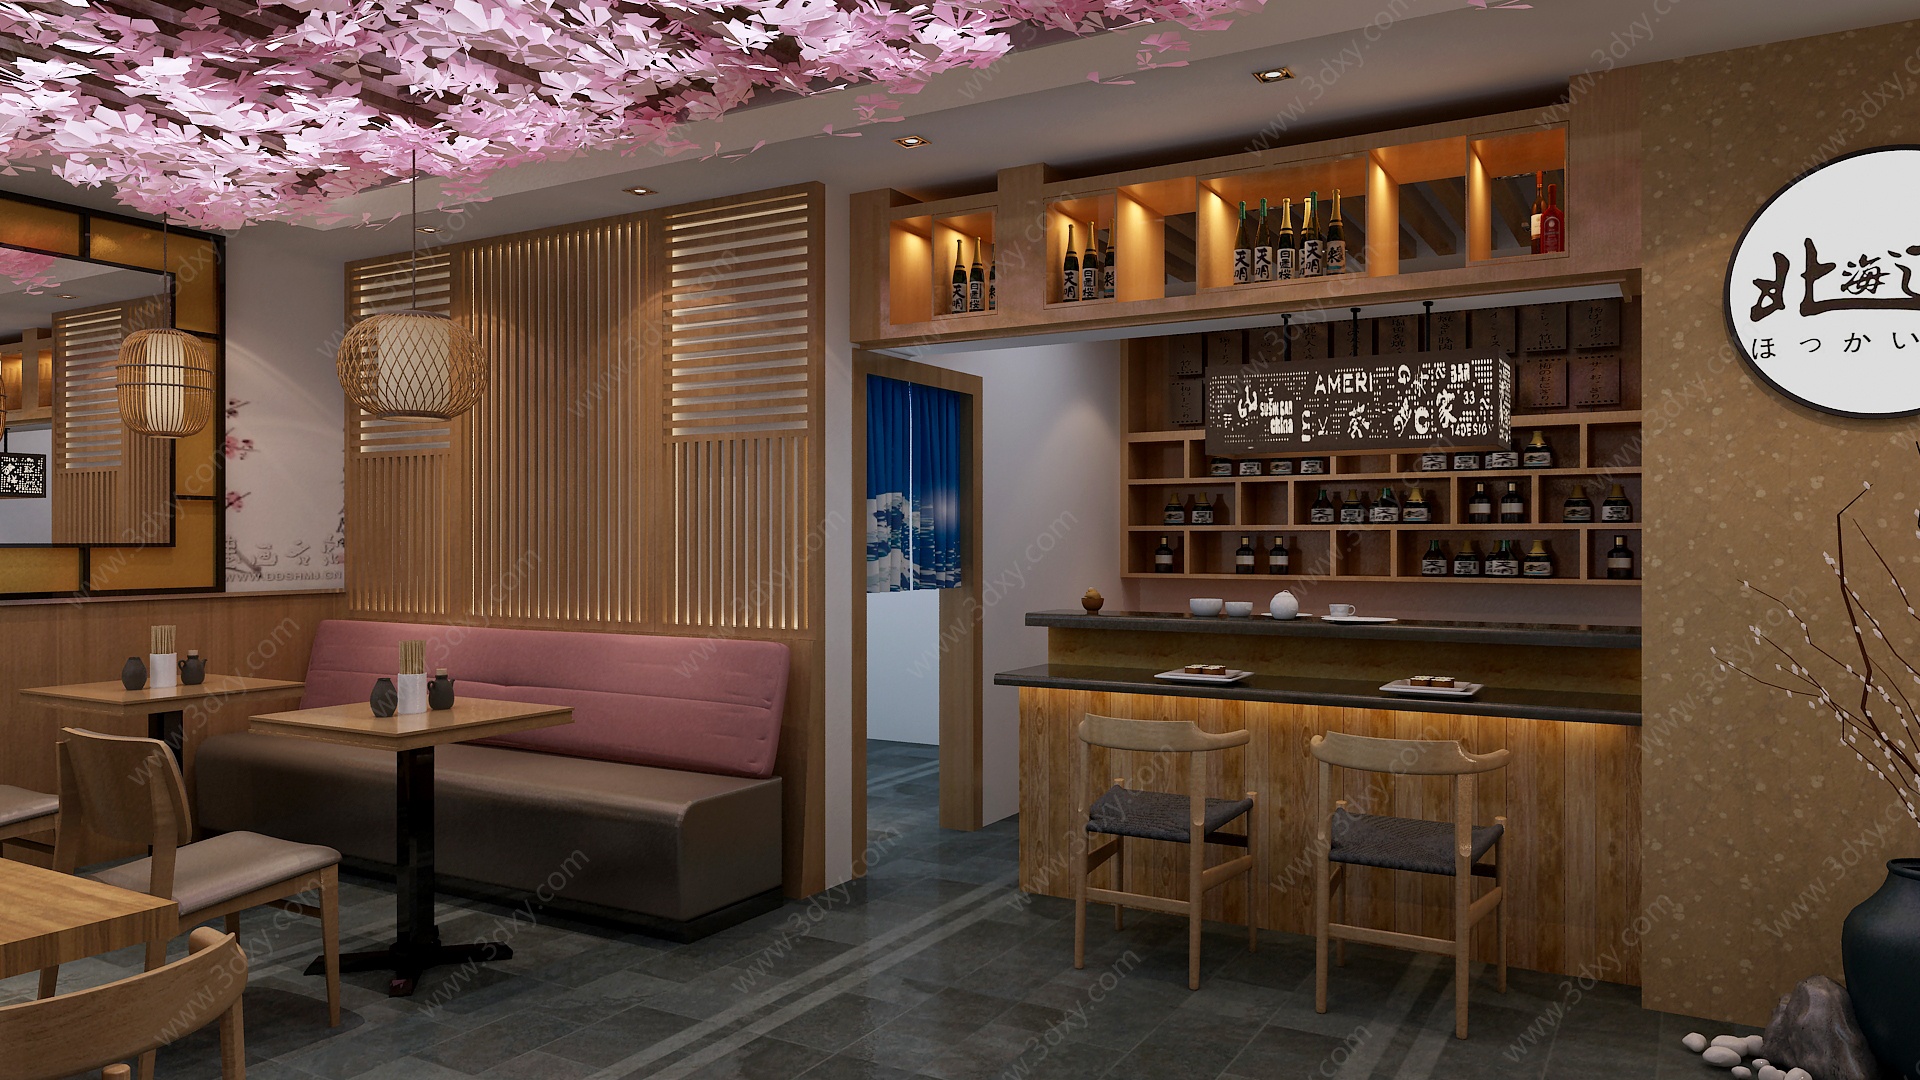 日式日料餐厅寿司料理3D模型